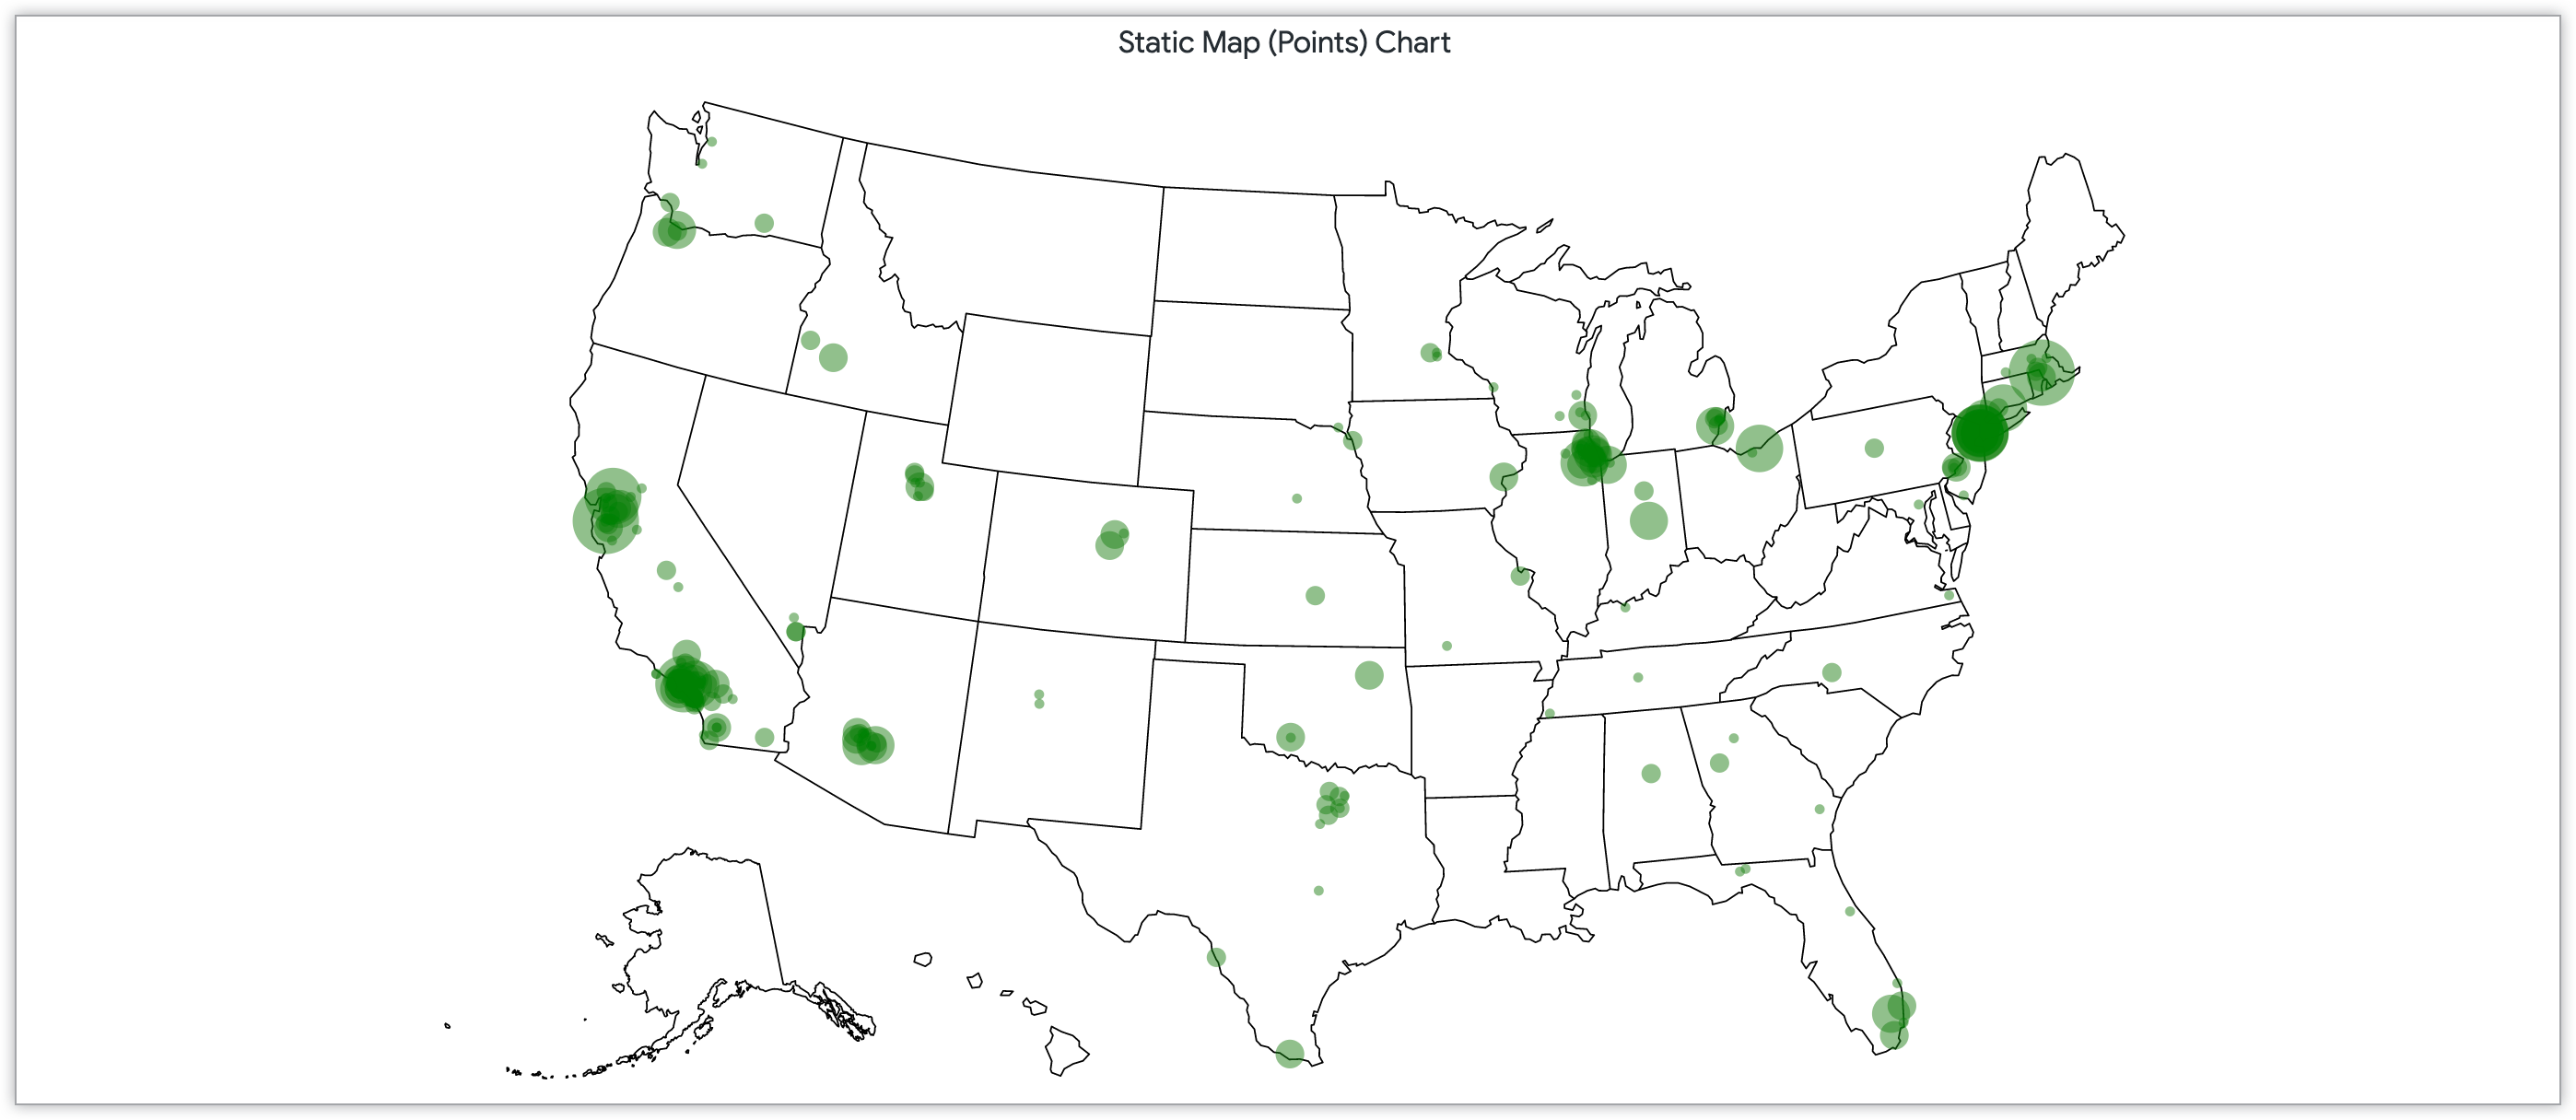 Grafico a mappa statica con punti dimensionati per numero di clienti nei codici postali degli Stati Uniti.